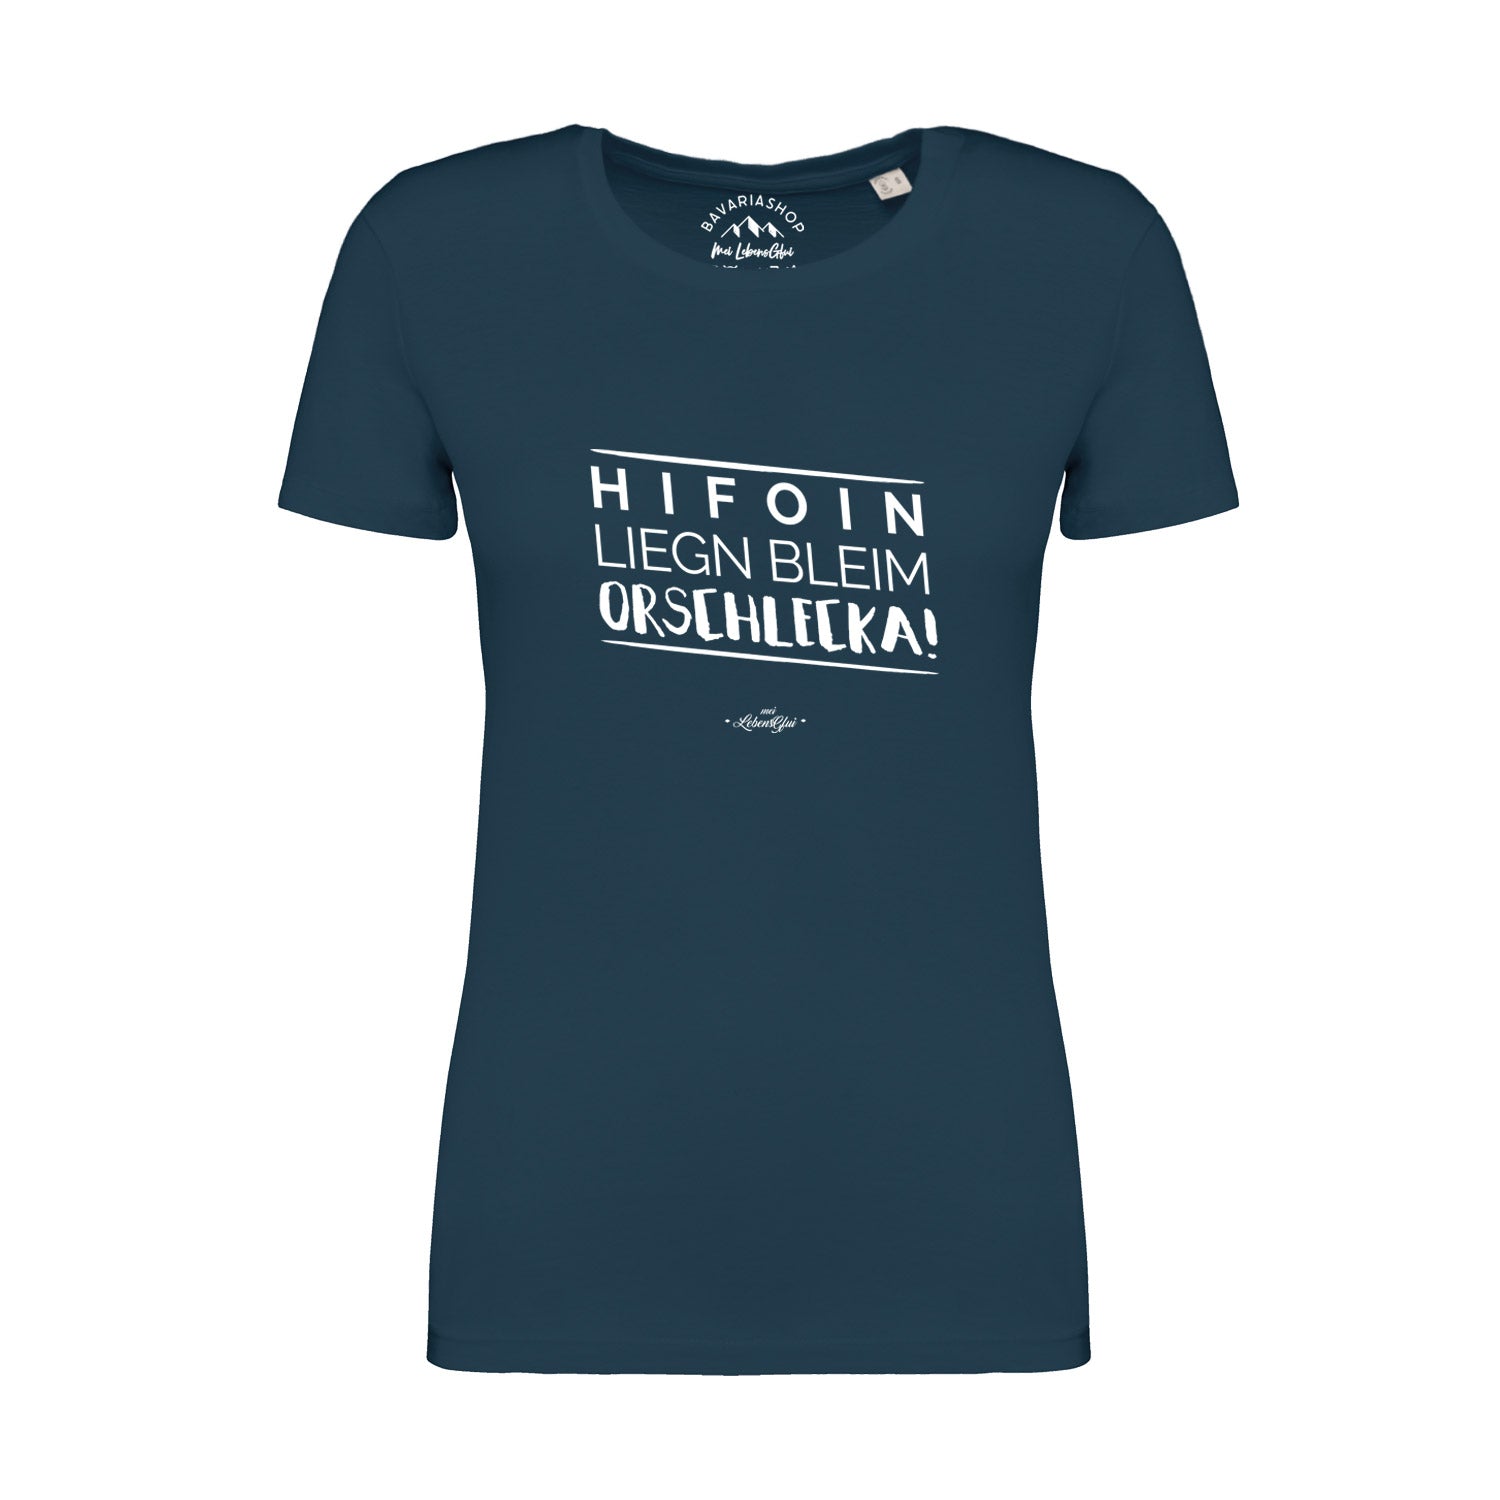 Damen T-Shirt "Hifoin liegn bleim..."